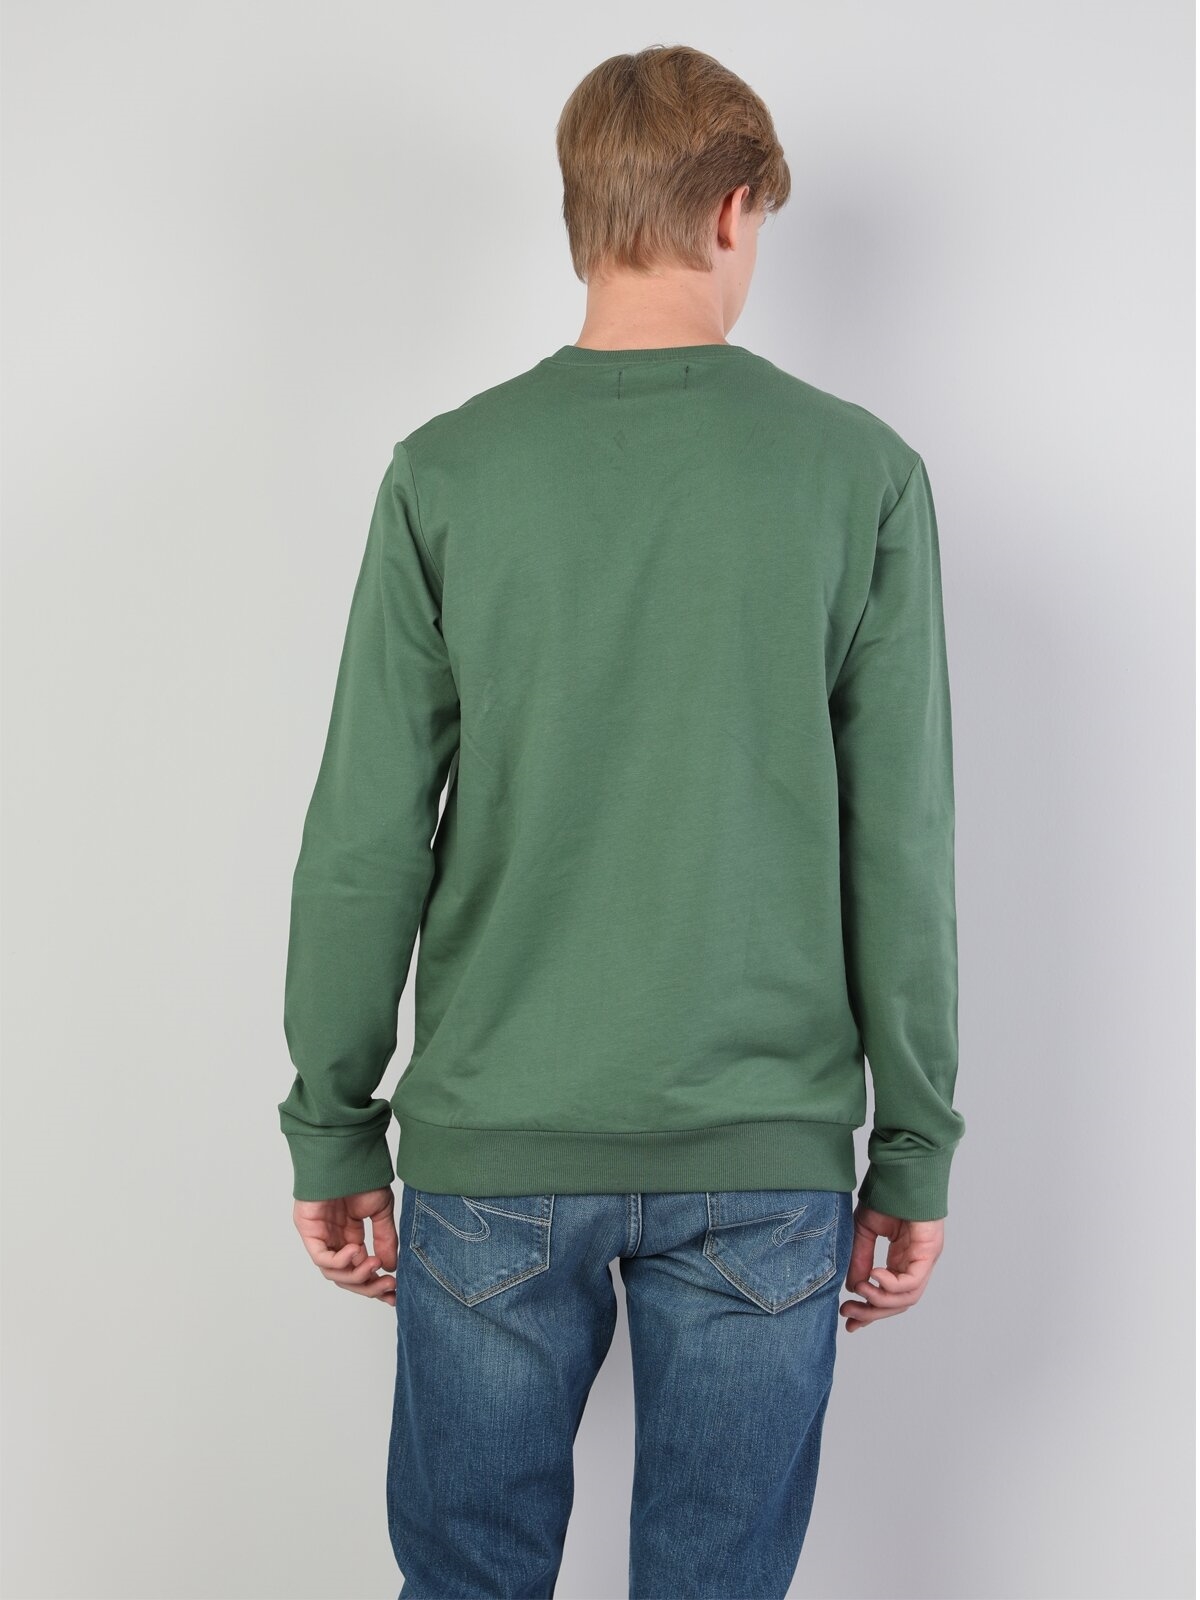 Afișați detalii pentru Swater / Bluza De Barbati Verde Regular Fit 